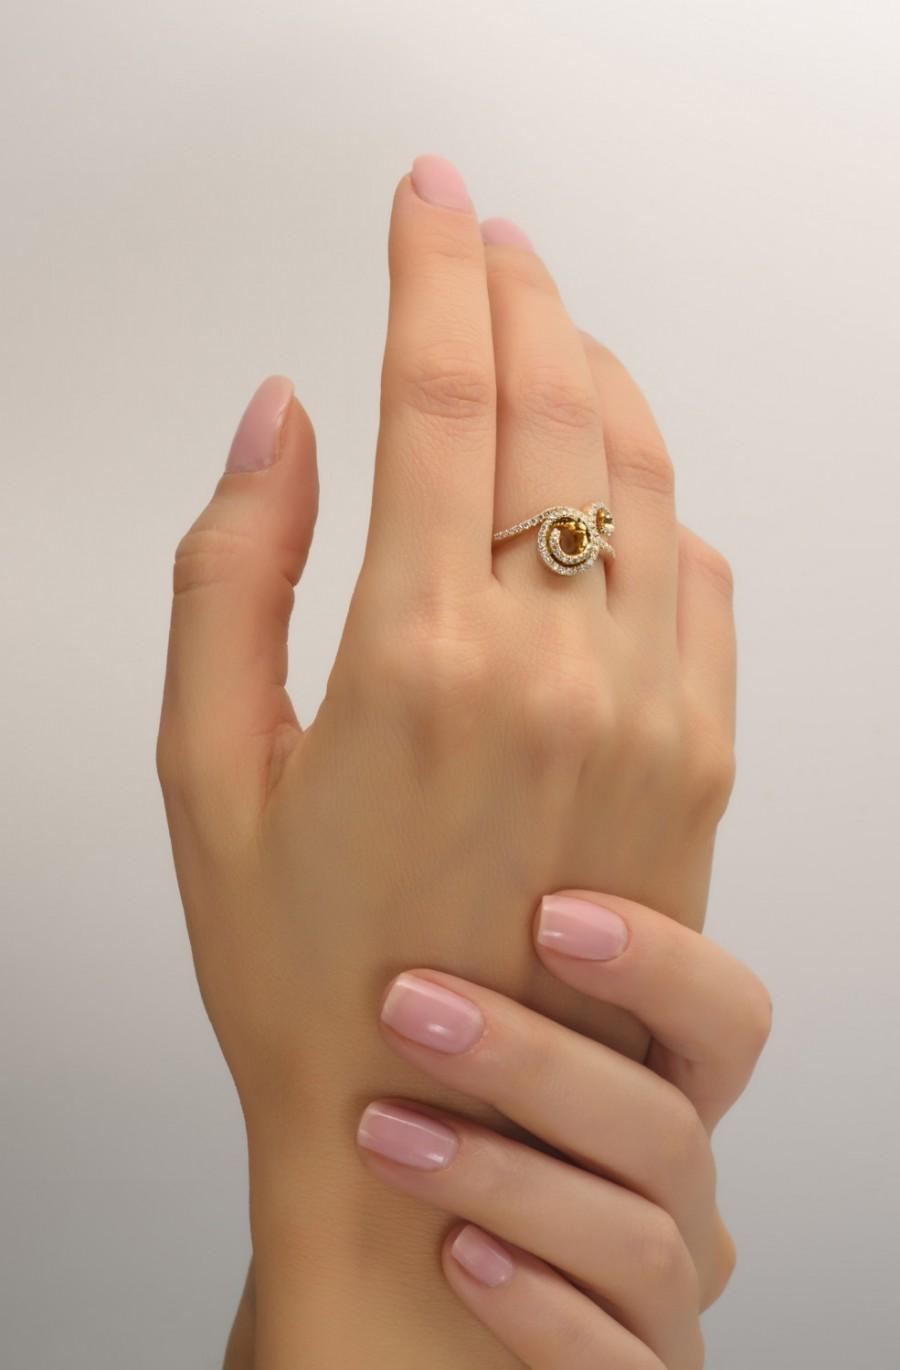 زفاف - Spiral Ring - 14K Solid Gold Diamond Ring, Pave Setting, Promise Ring, Anniversary Ring, Statement Ring, antique,art nouveau,vintage